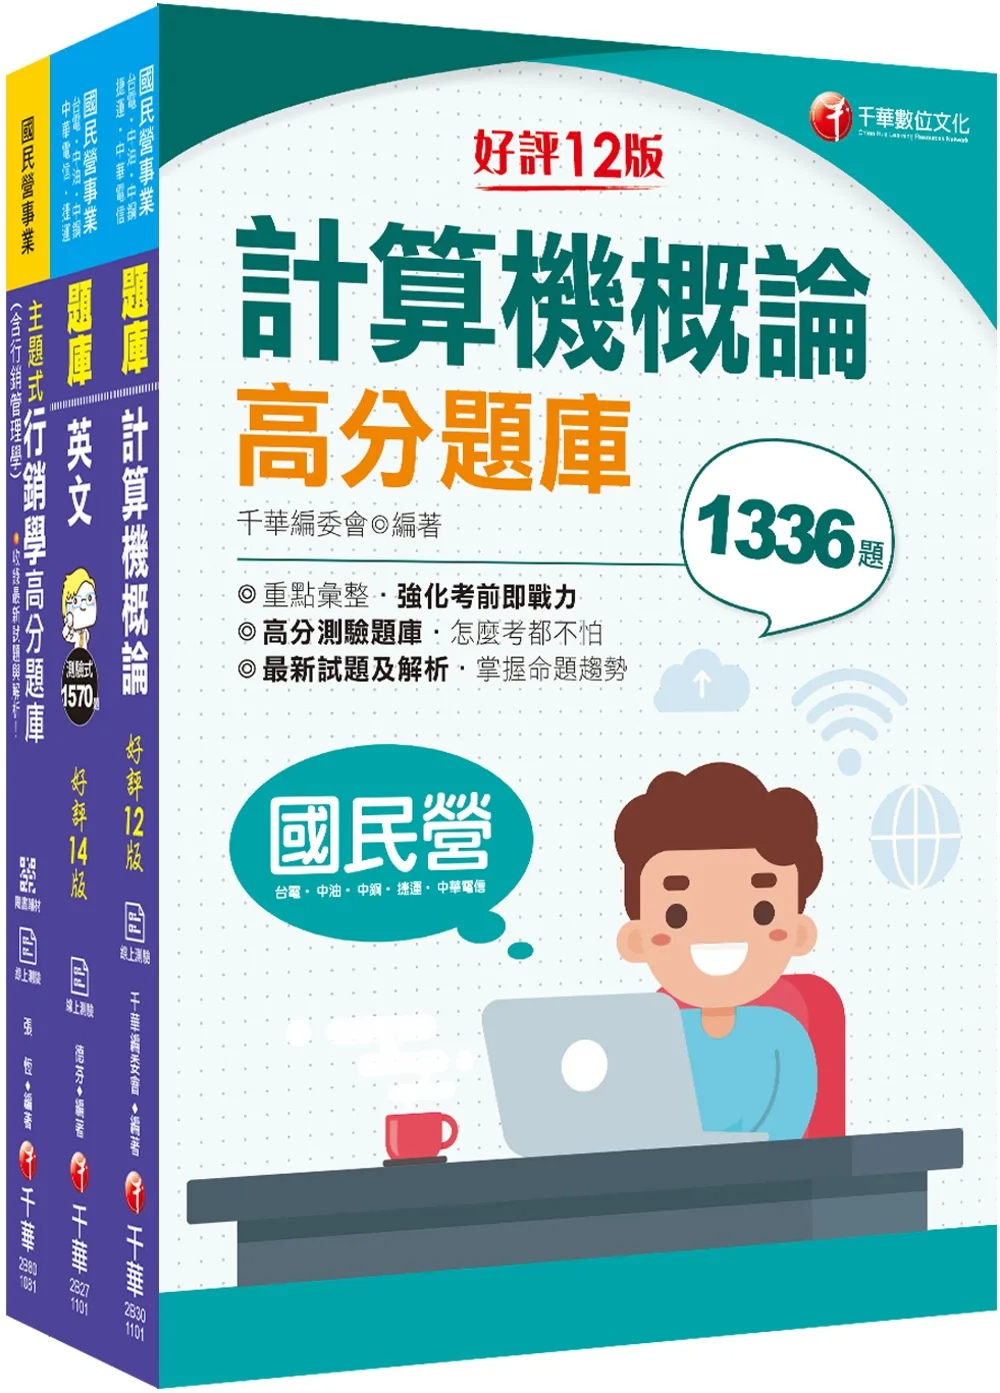 2022[工務類-企業客戶技術服務專業職(四)工程師]中華電信從業人員(基層專員)遴選題庫版套書：收錄完整必讀關鍵題型，解題易讀易懂易記！